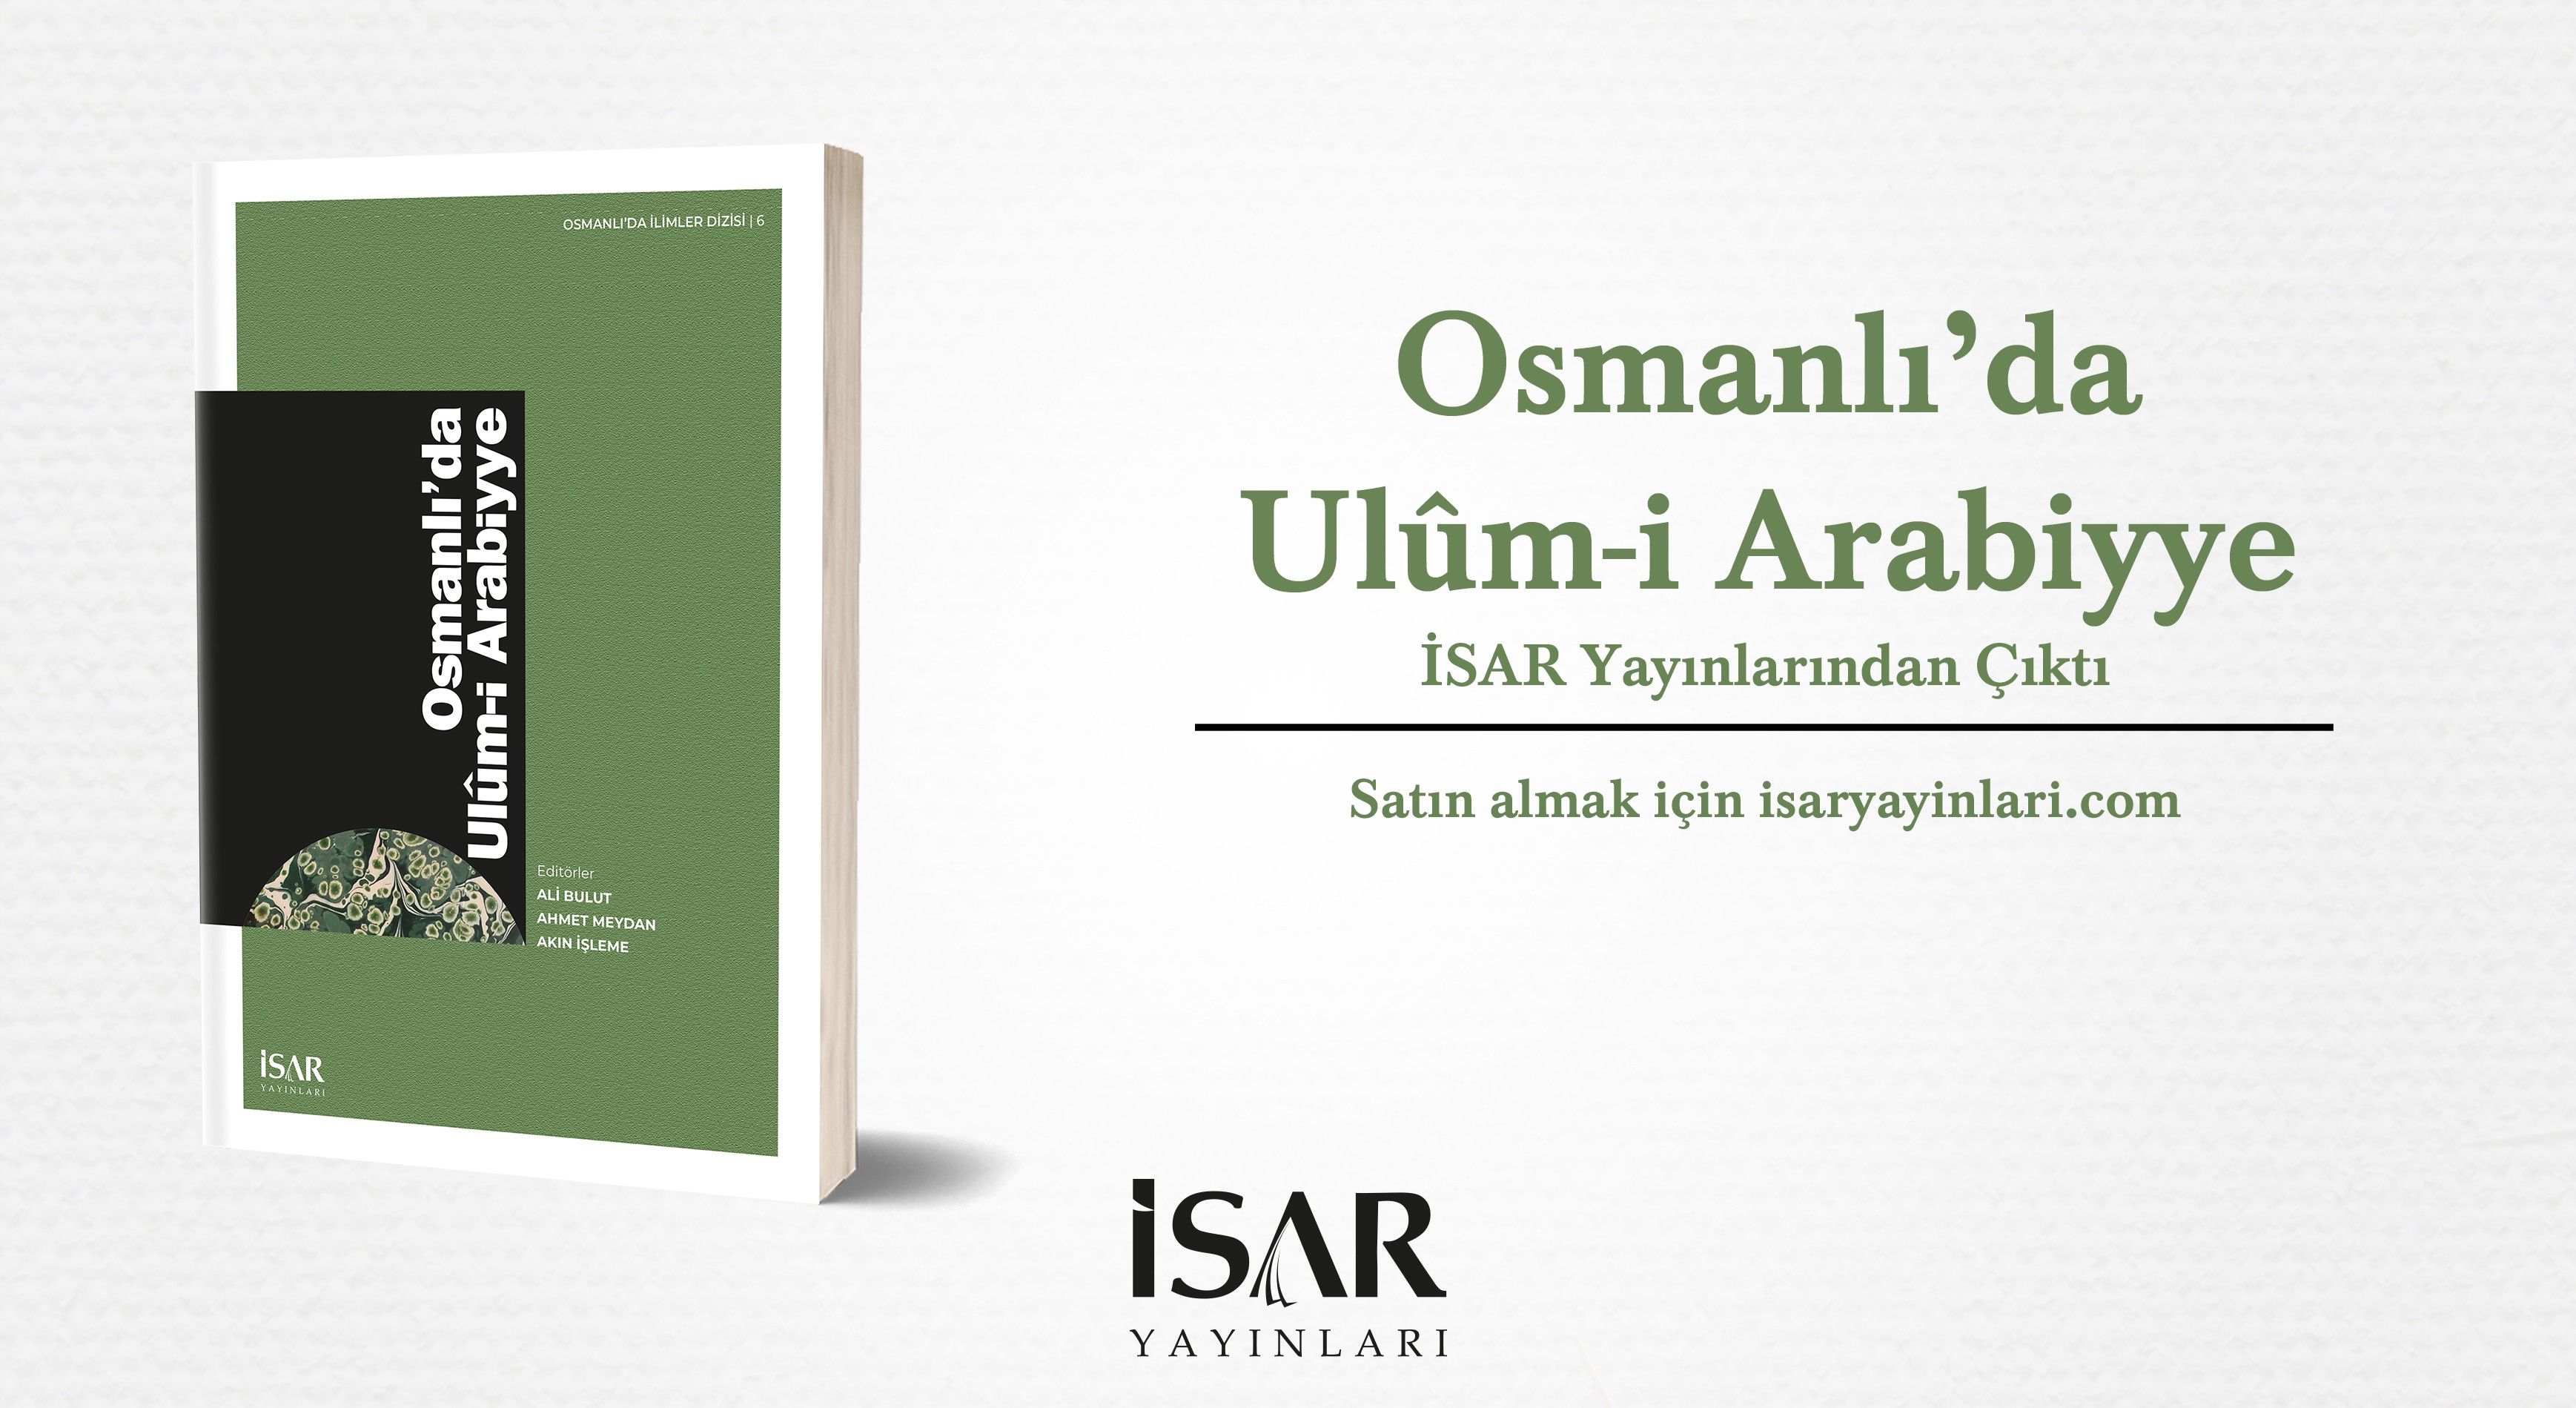 Osmanlı'da Ulûm-i Arabiyye Kitabı İSAR yayınlarından Çıktı